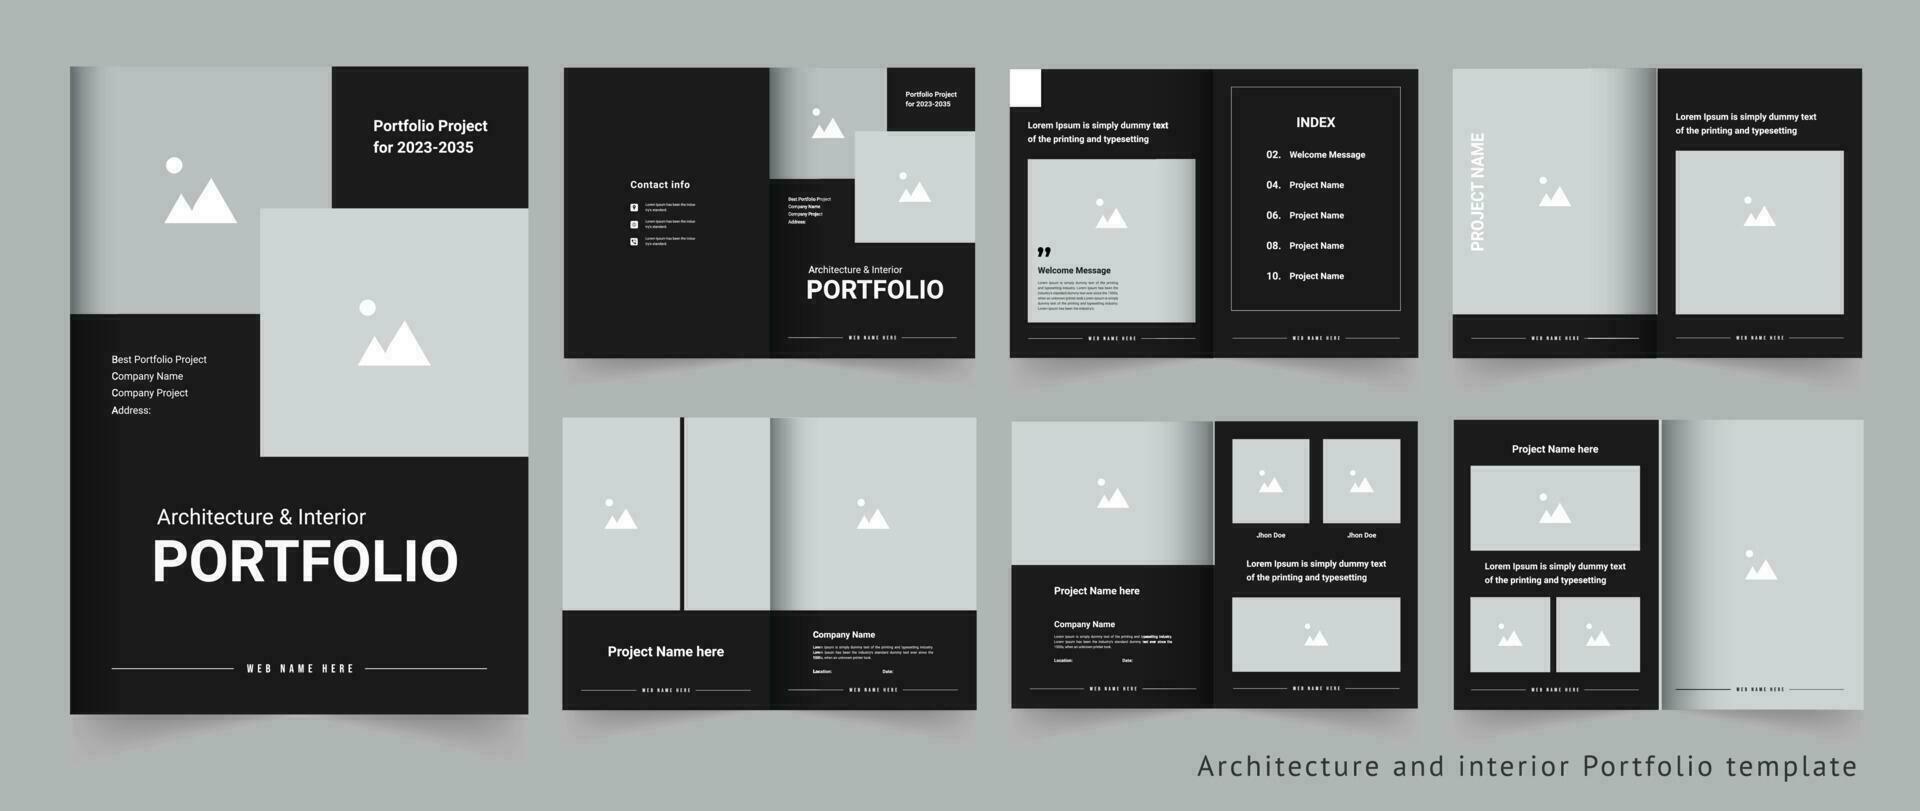 Modern and creative architecture portfolio or interior portfolio or project portfolio design template vector